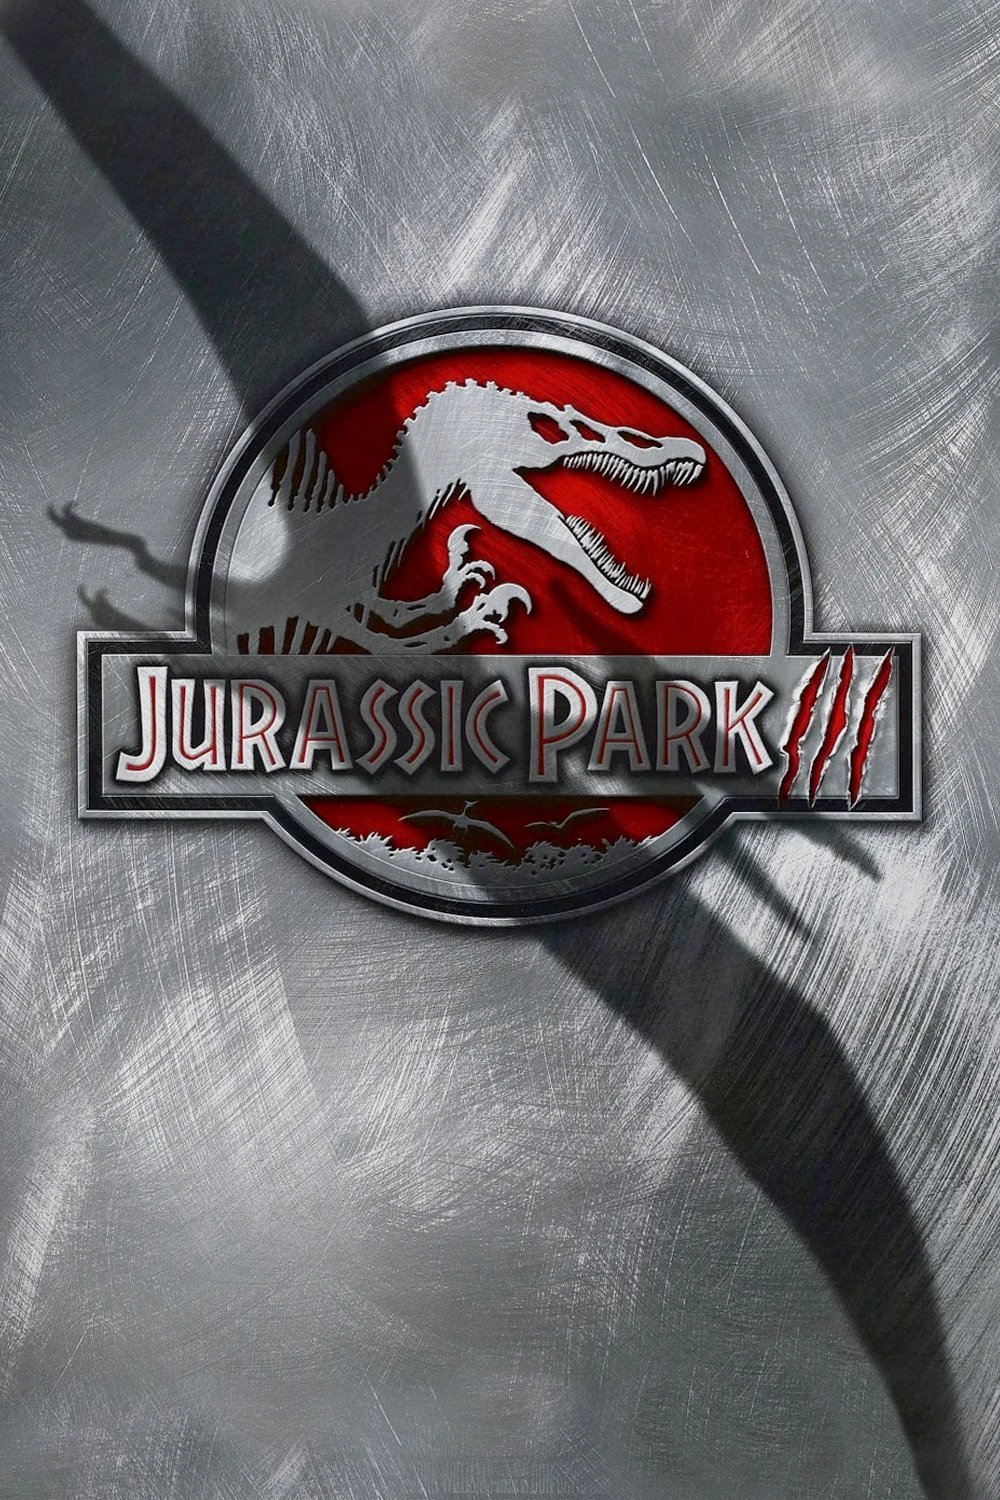 变动最大的其实是《侏罗纪公园3》的海报，霸王龙变成了棘龙，还多了无齿翼龙的投影